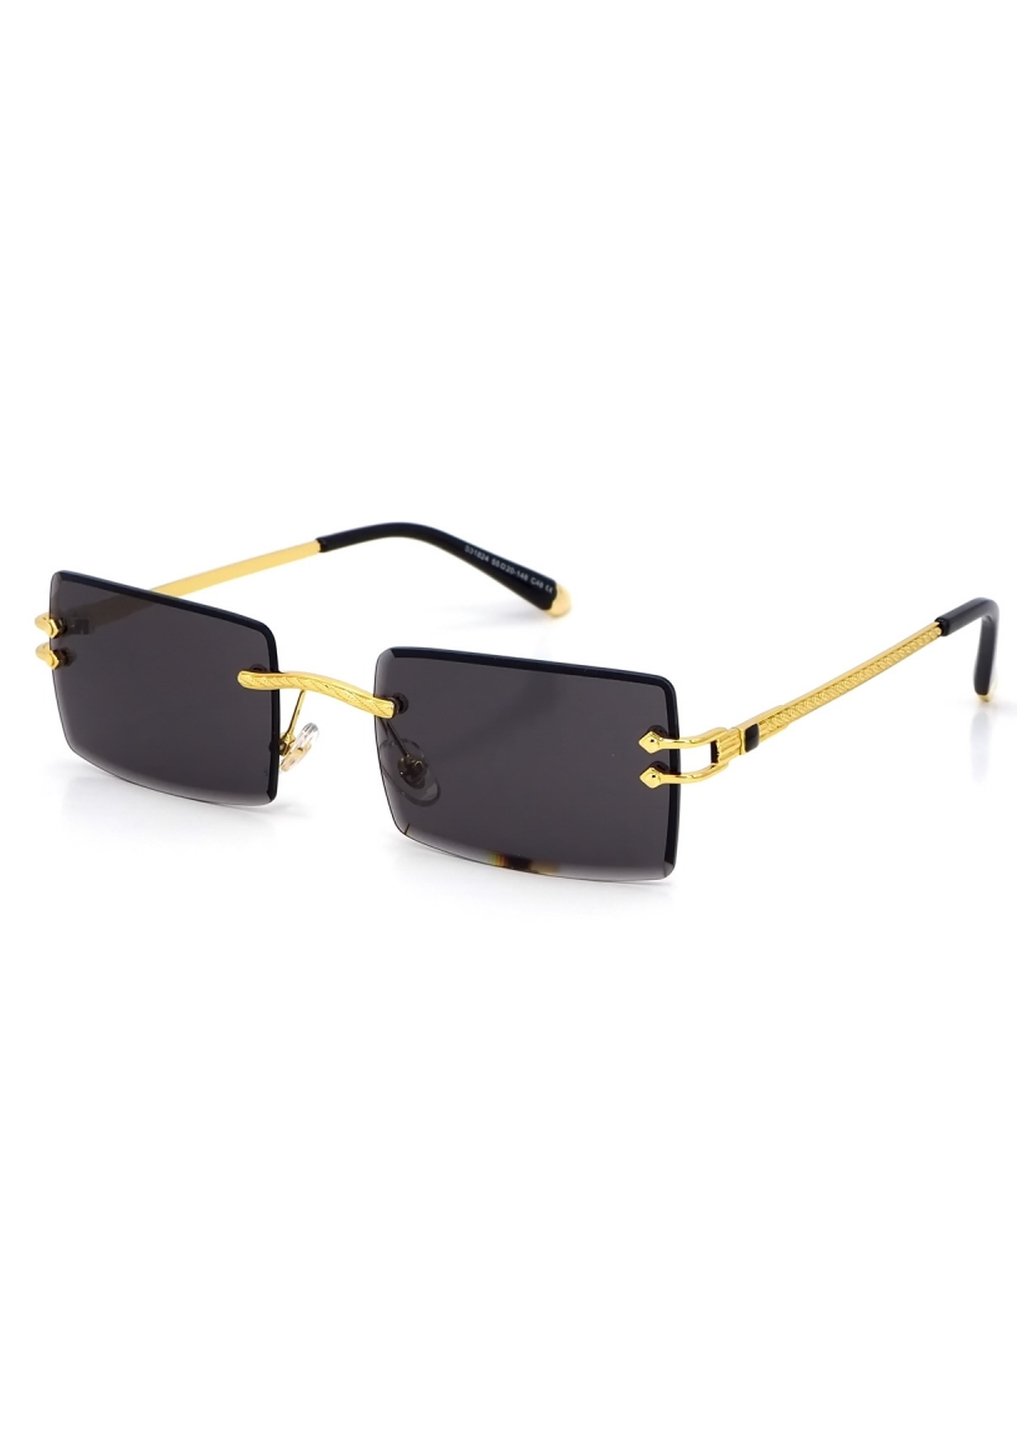 Купить Женские солнцезащитные очки Merlini с поляризацией S31824 117076 - Золотистый в интернет-магазине